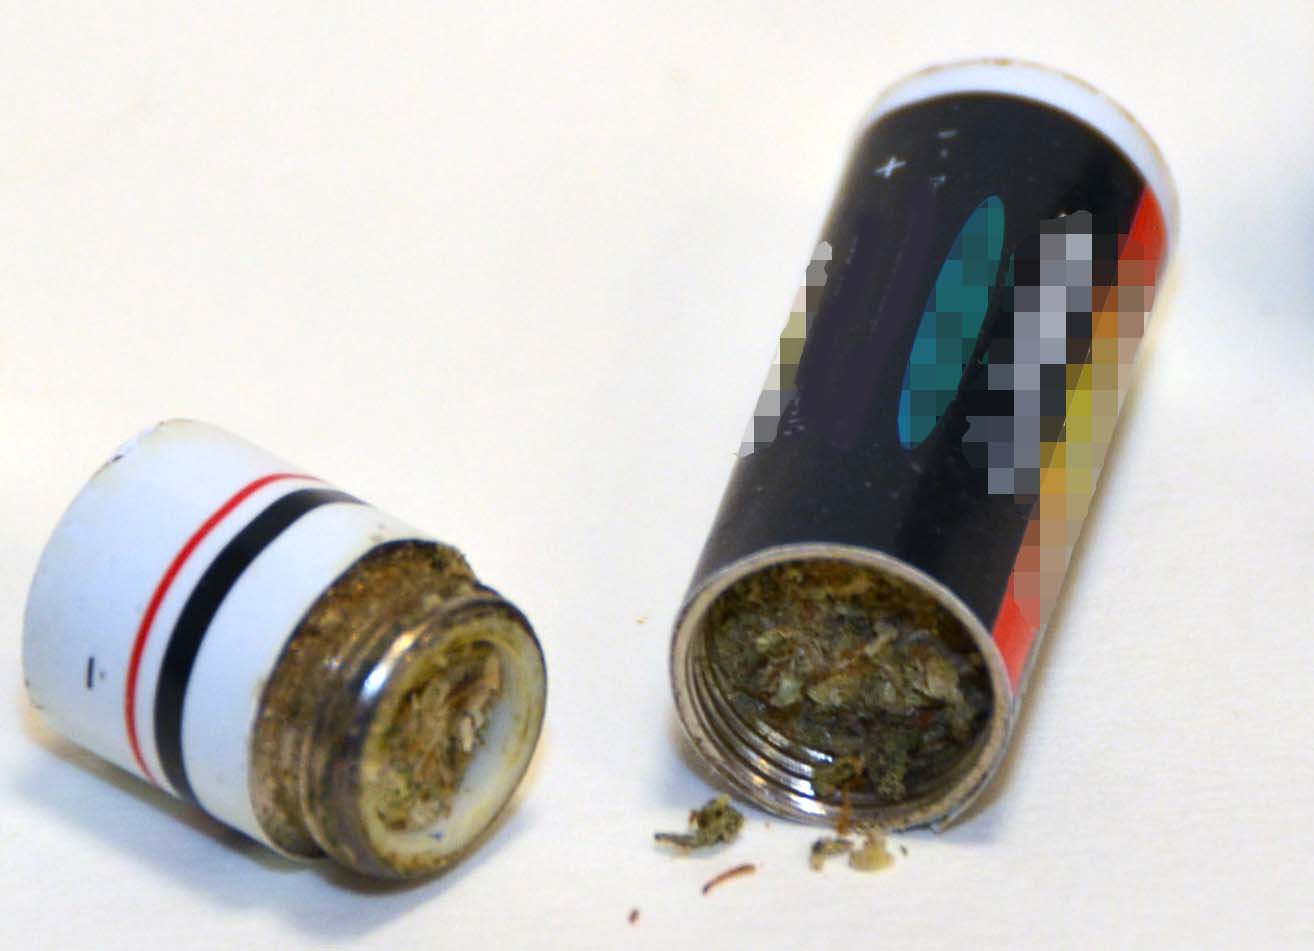 Die Batterien ließen sich aufschrauben - darin waren Drogen versteckt.